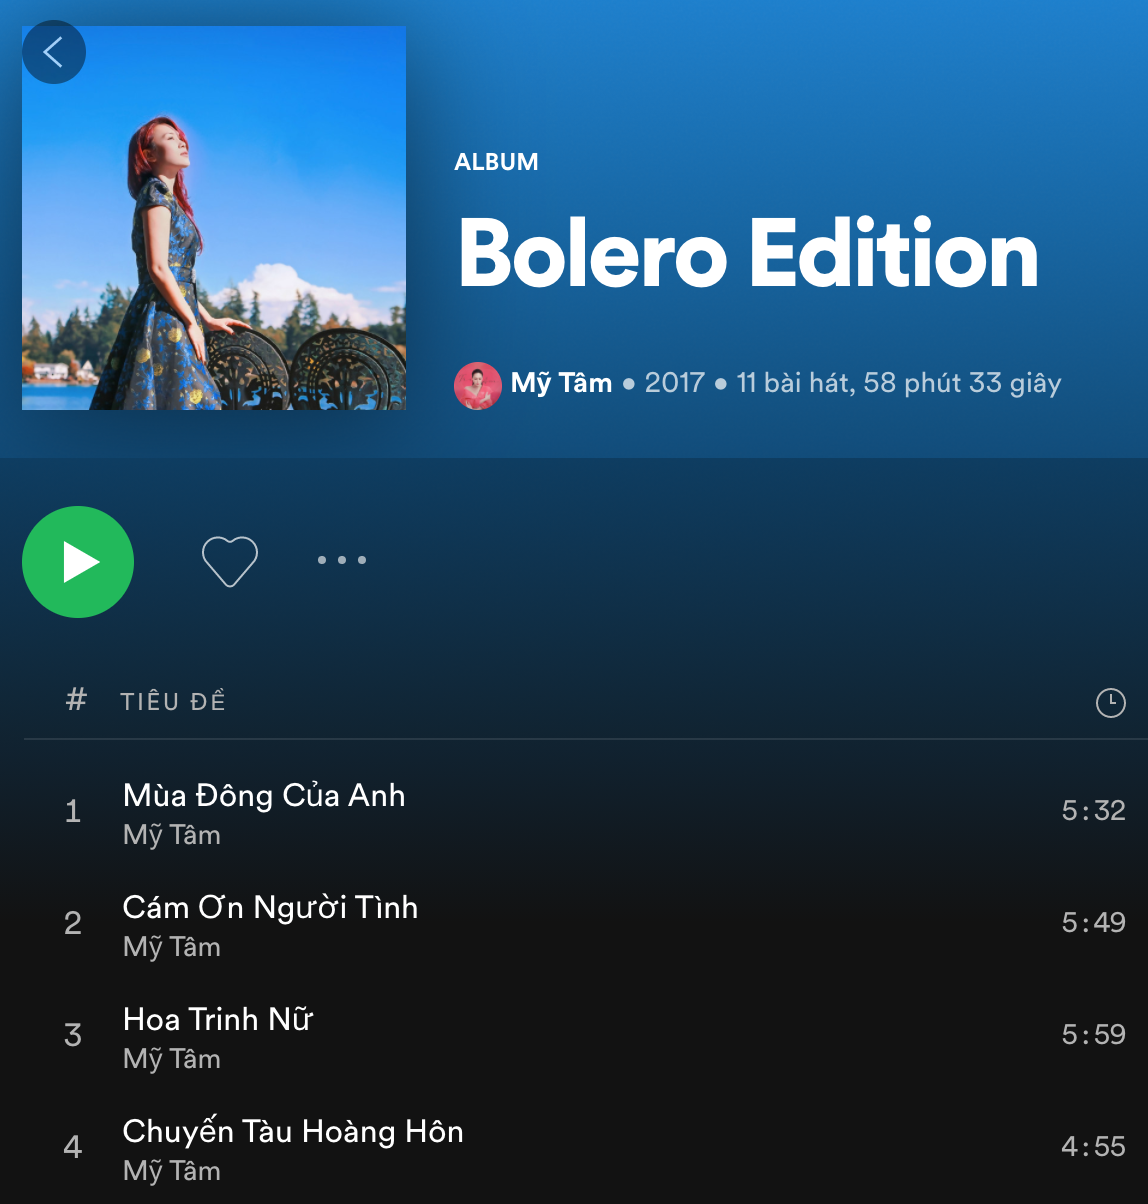 Album Bolero Edition của Mỹ Tâm gồm 11 ca khúc được thu âm hoàn chỉnh dựa trên các màn trình diễn trước đây của nữ ca sĩ